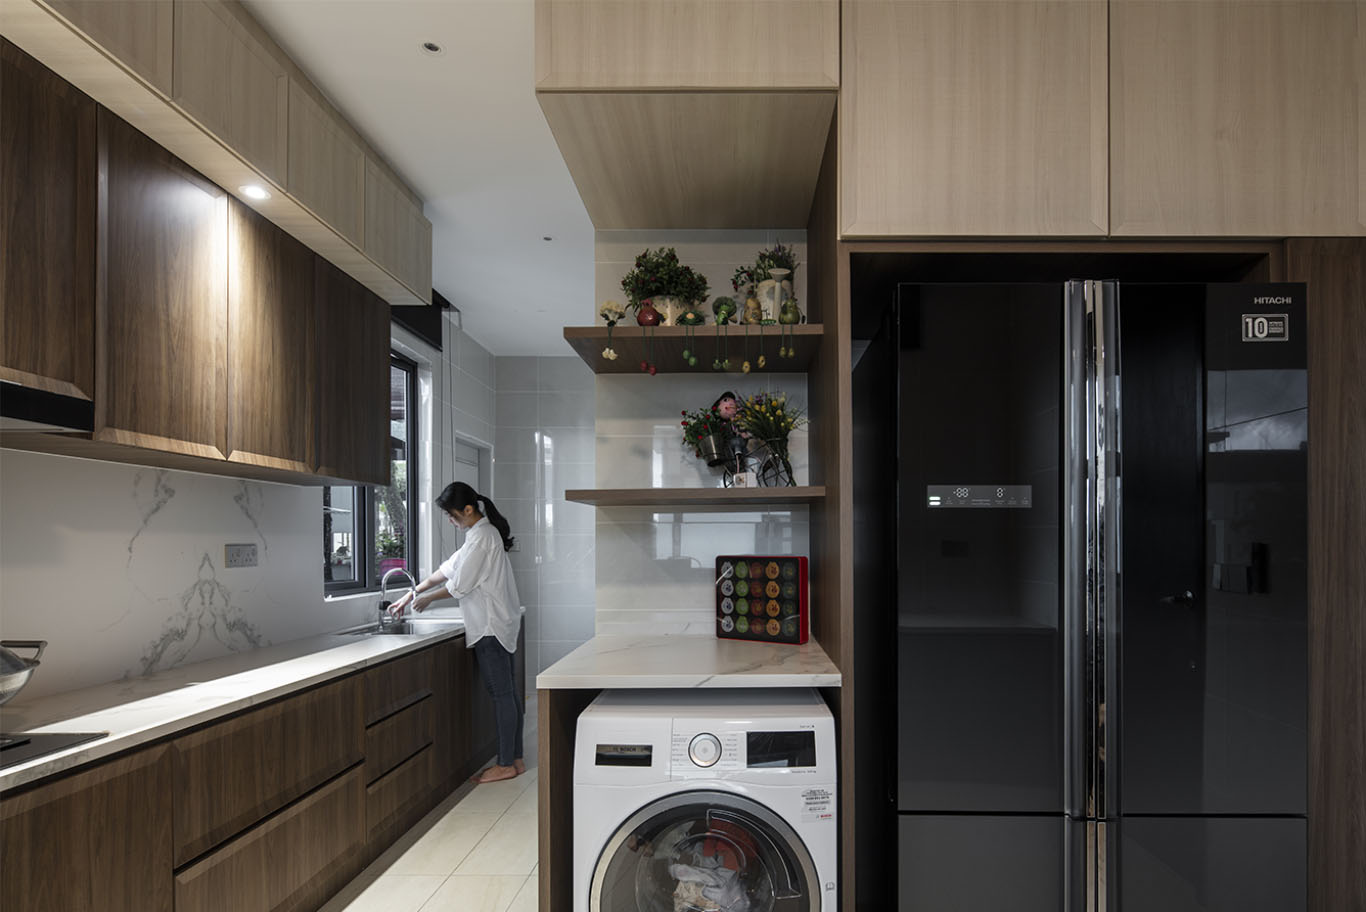 MIEUX La Famillie De Lee modern kitchen design with white round glass door washing machine mieux interior design